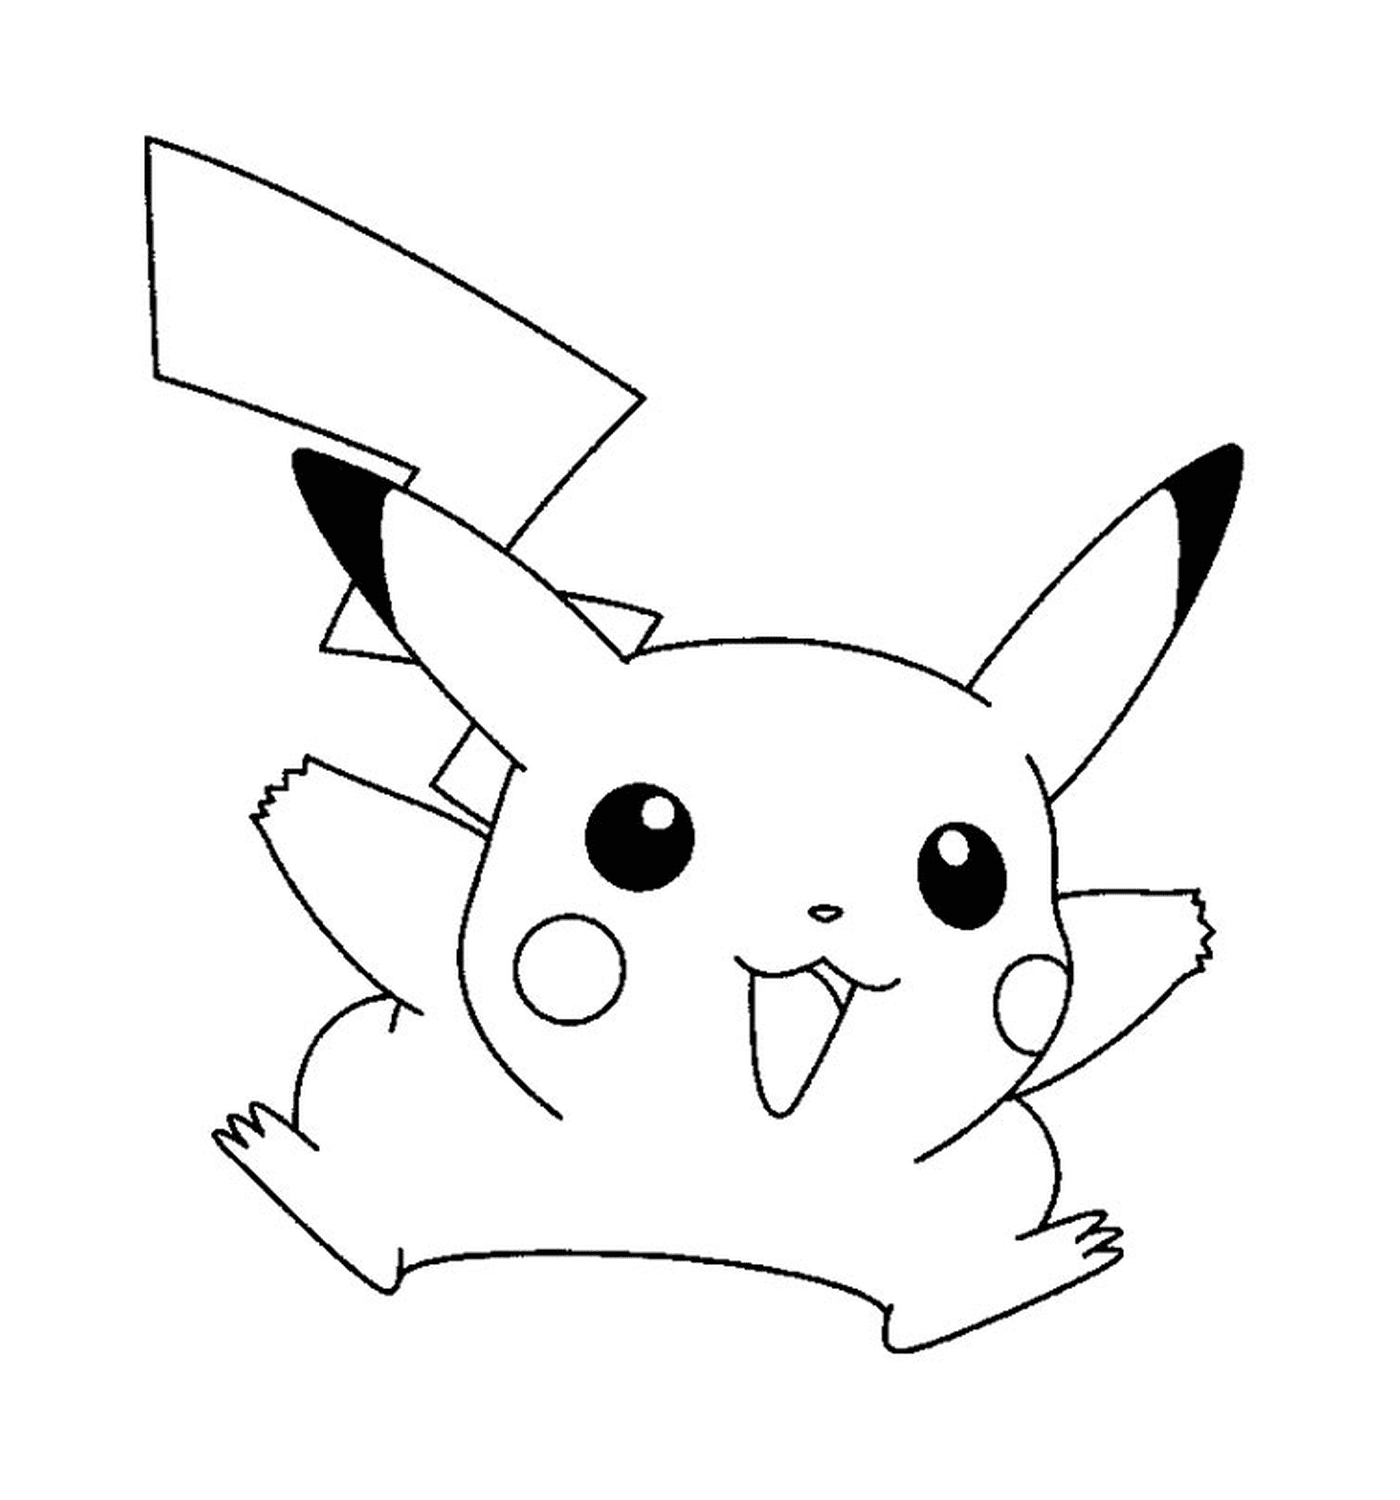  Pikachu niedlich und einfach zu zeichnen 